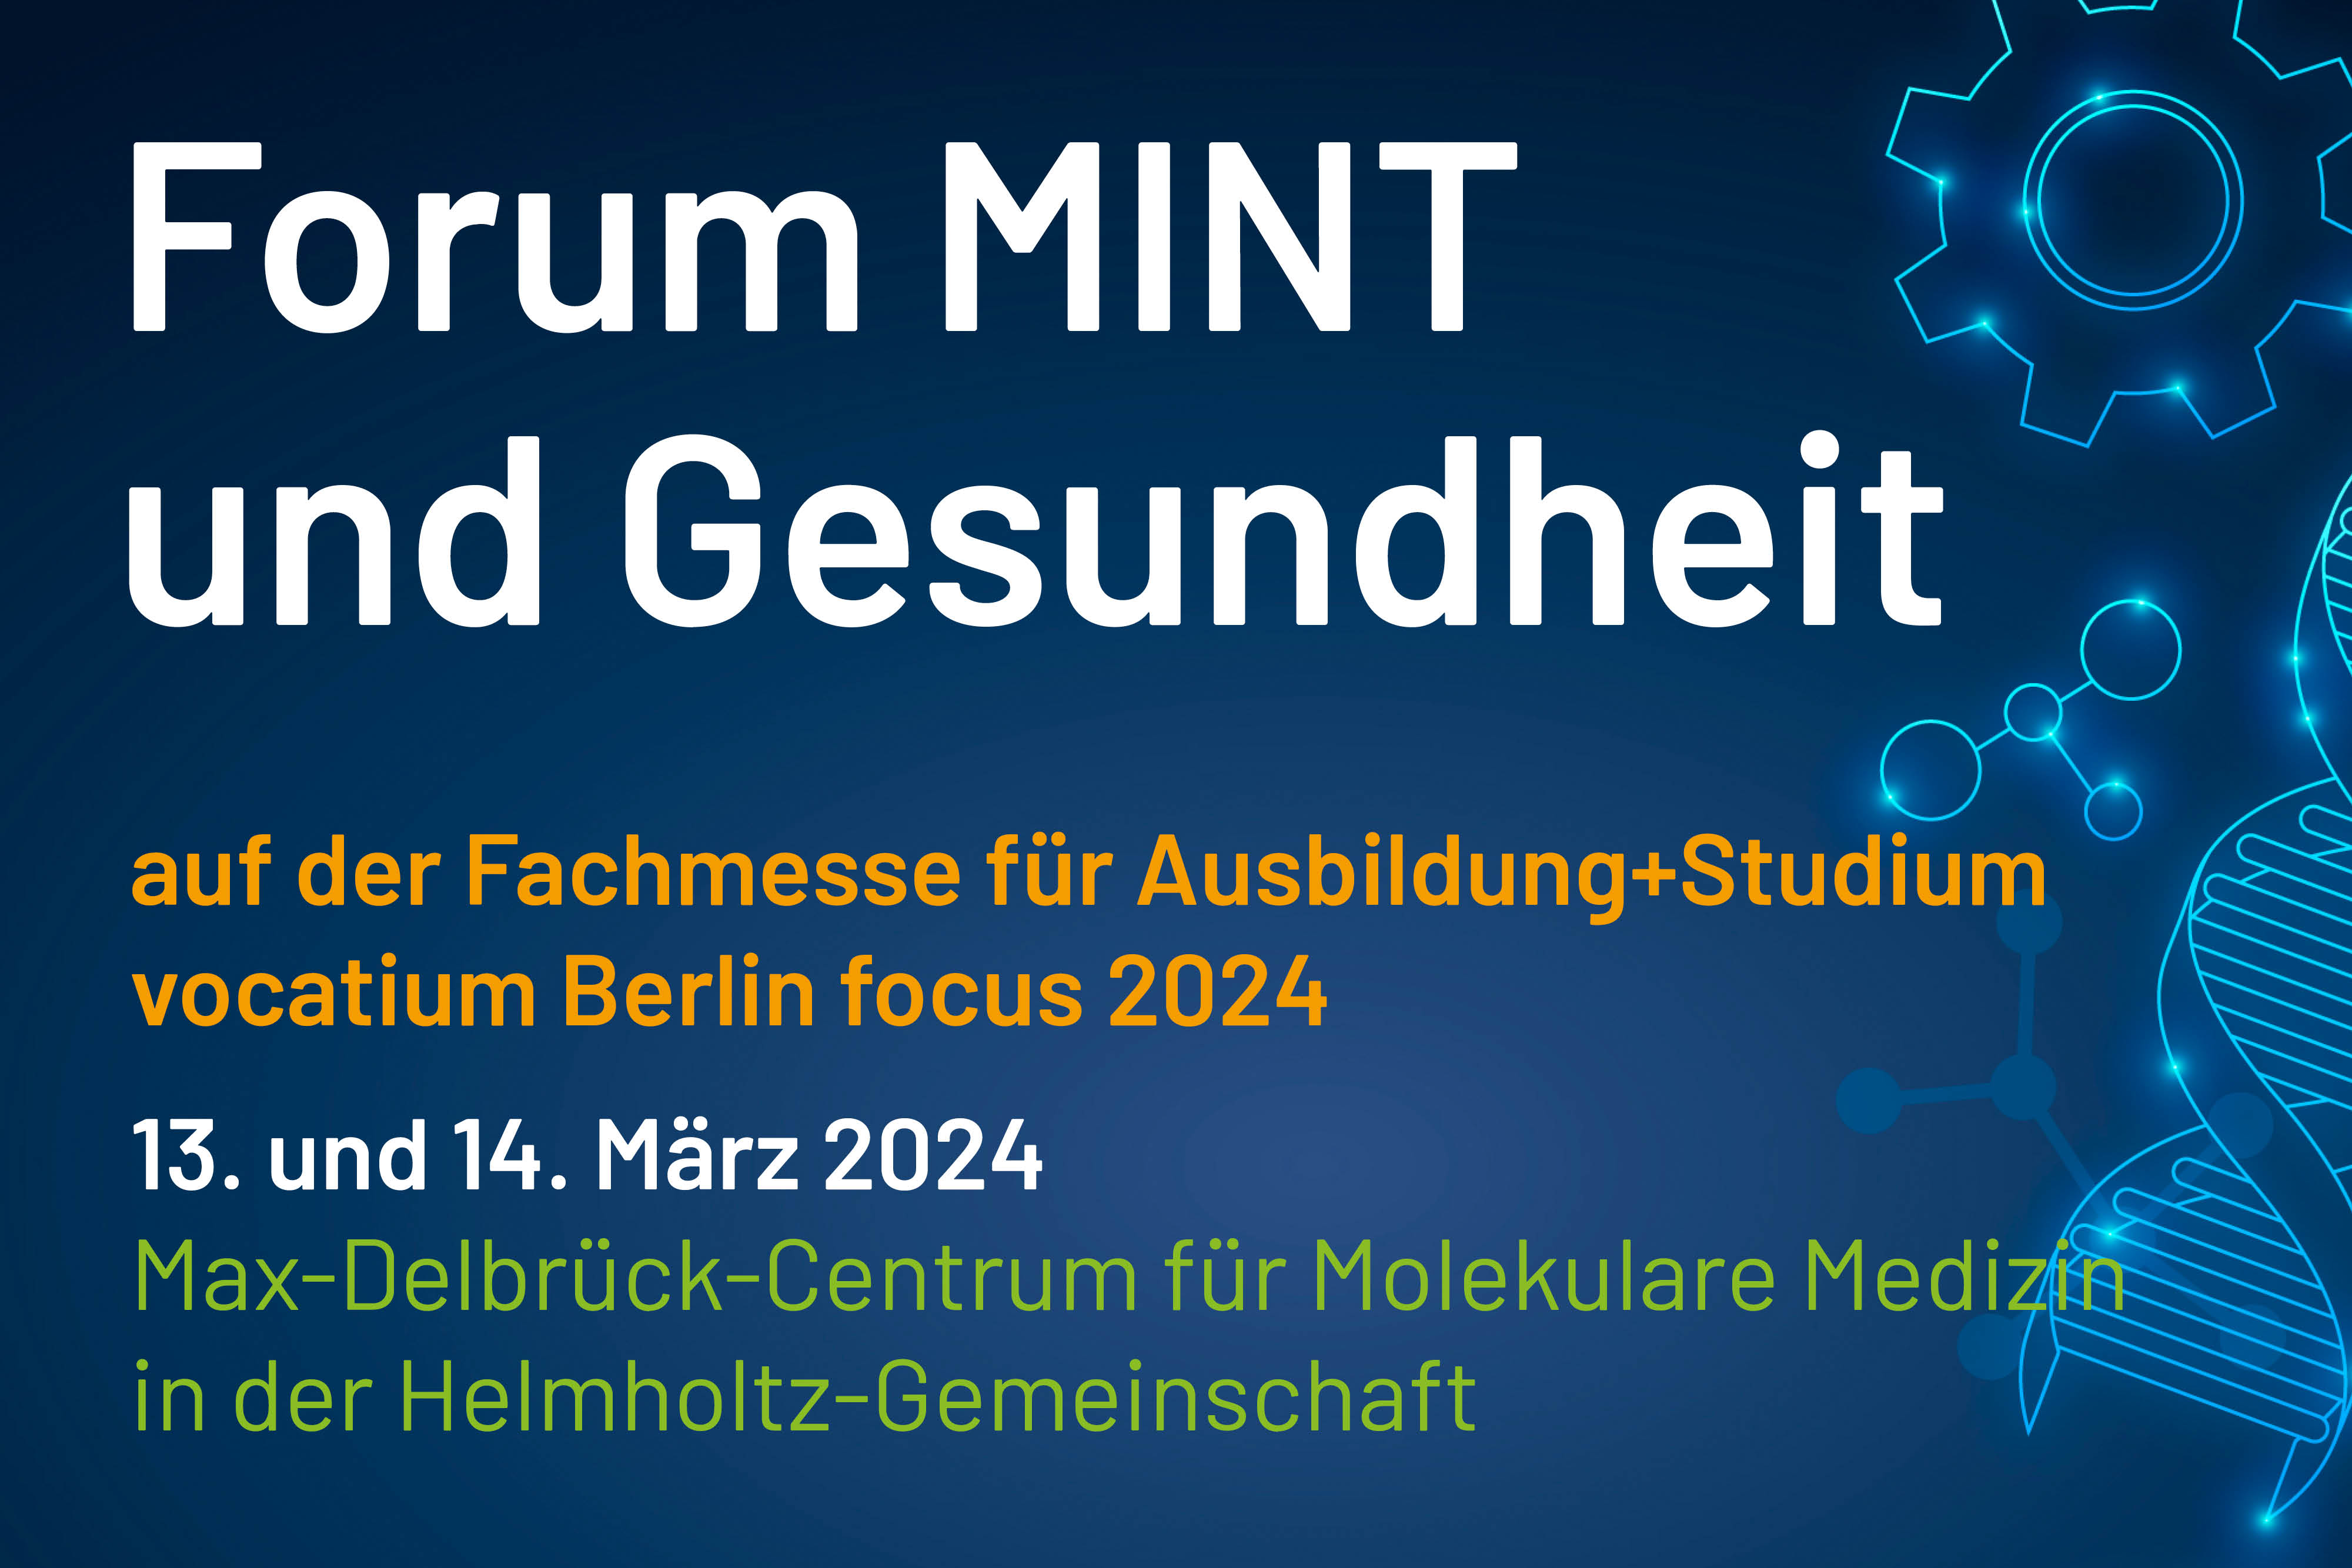 MINT_gesundheit_berlin_focus_2024_web_content